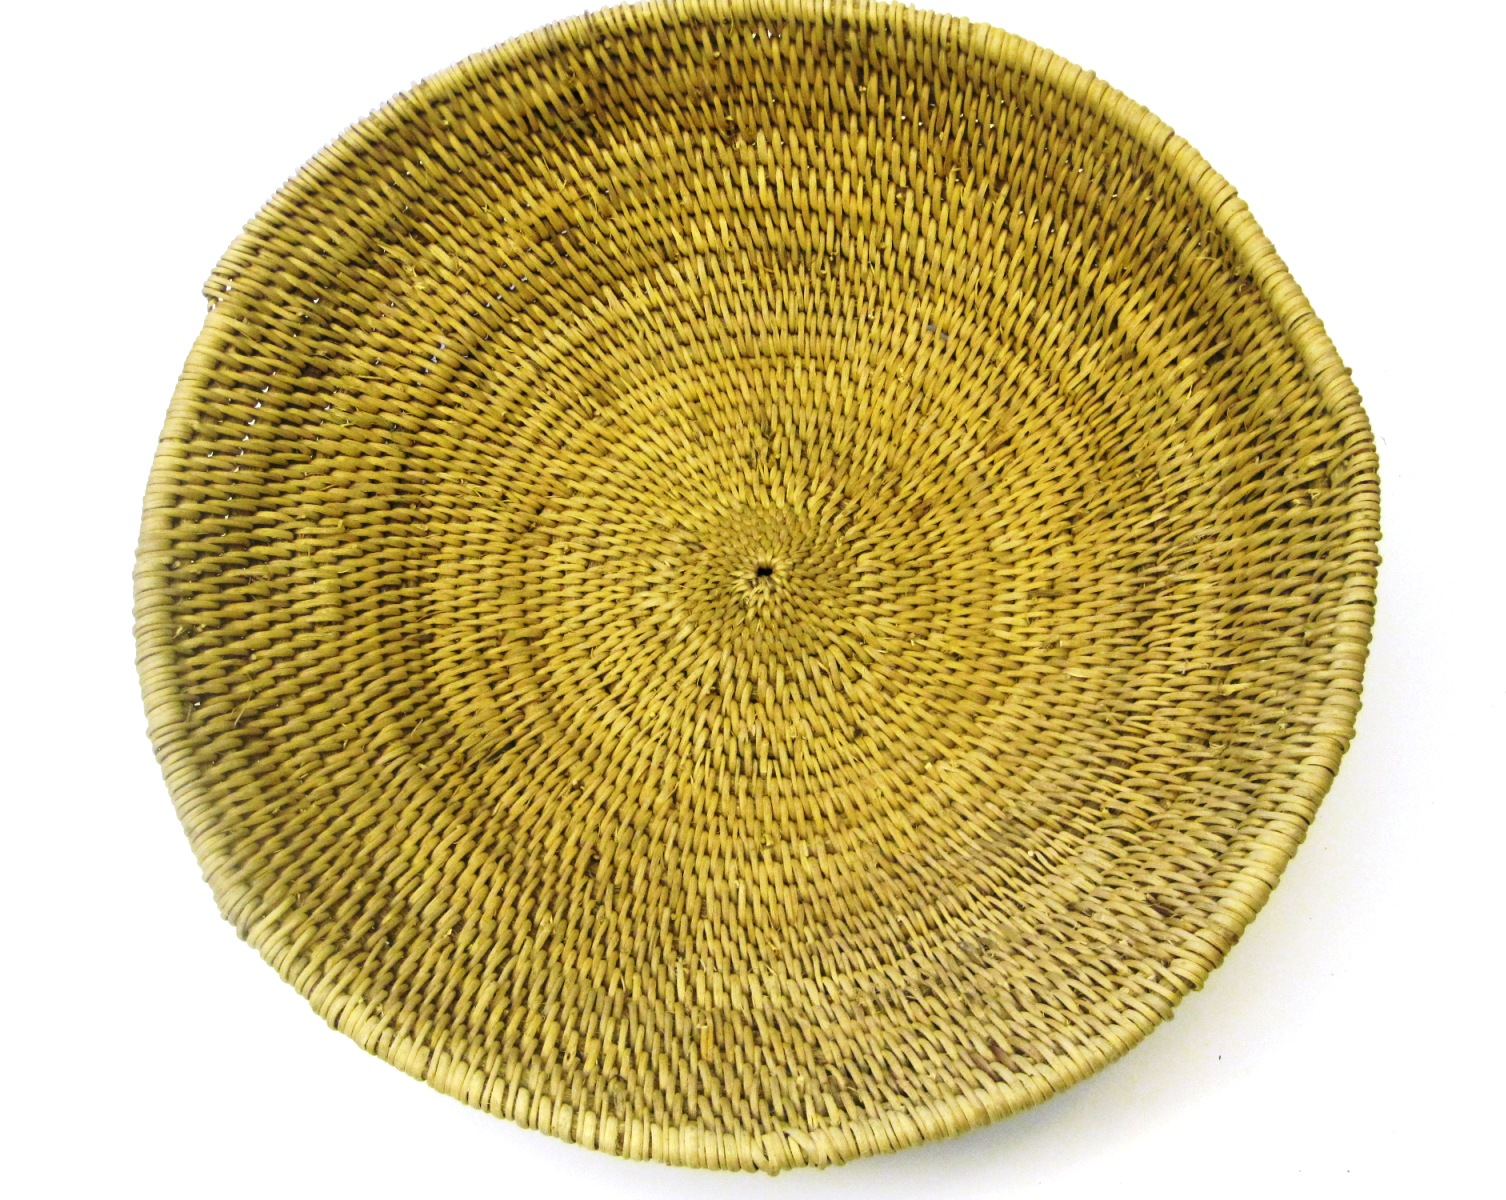 Buhera Oval Basket from Zimbabwe #007